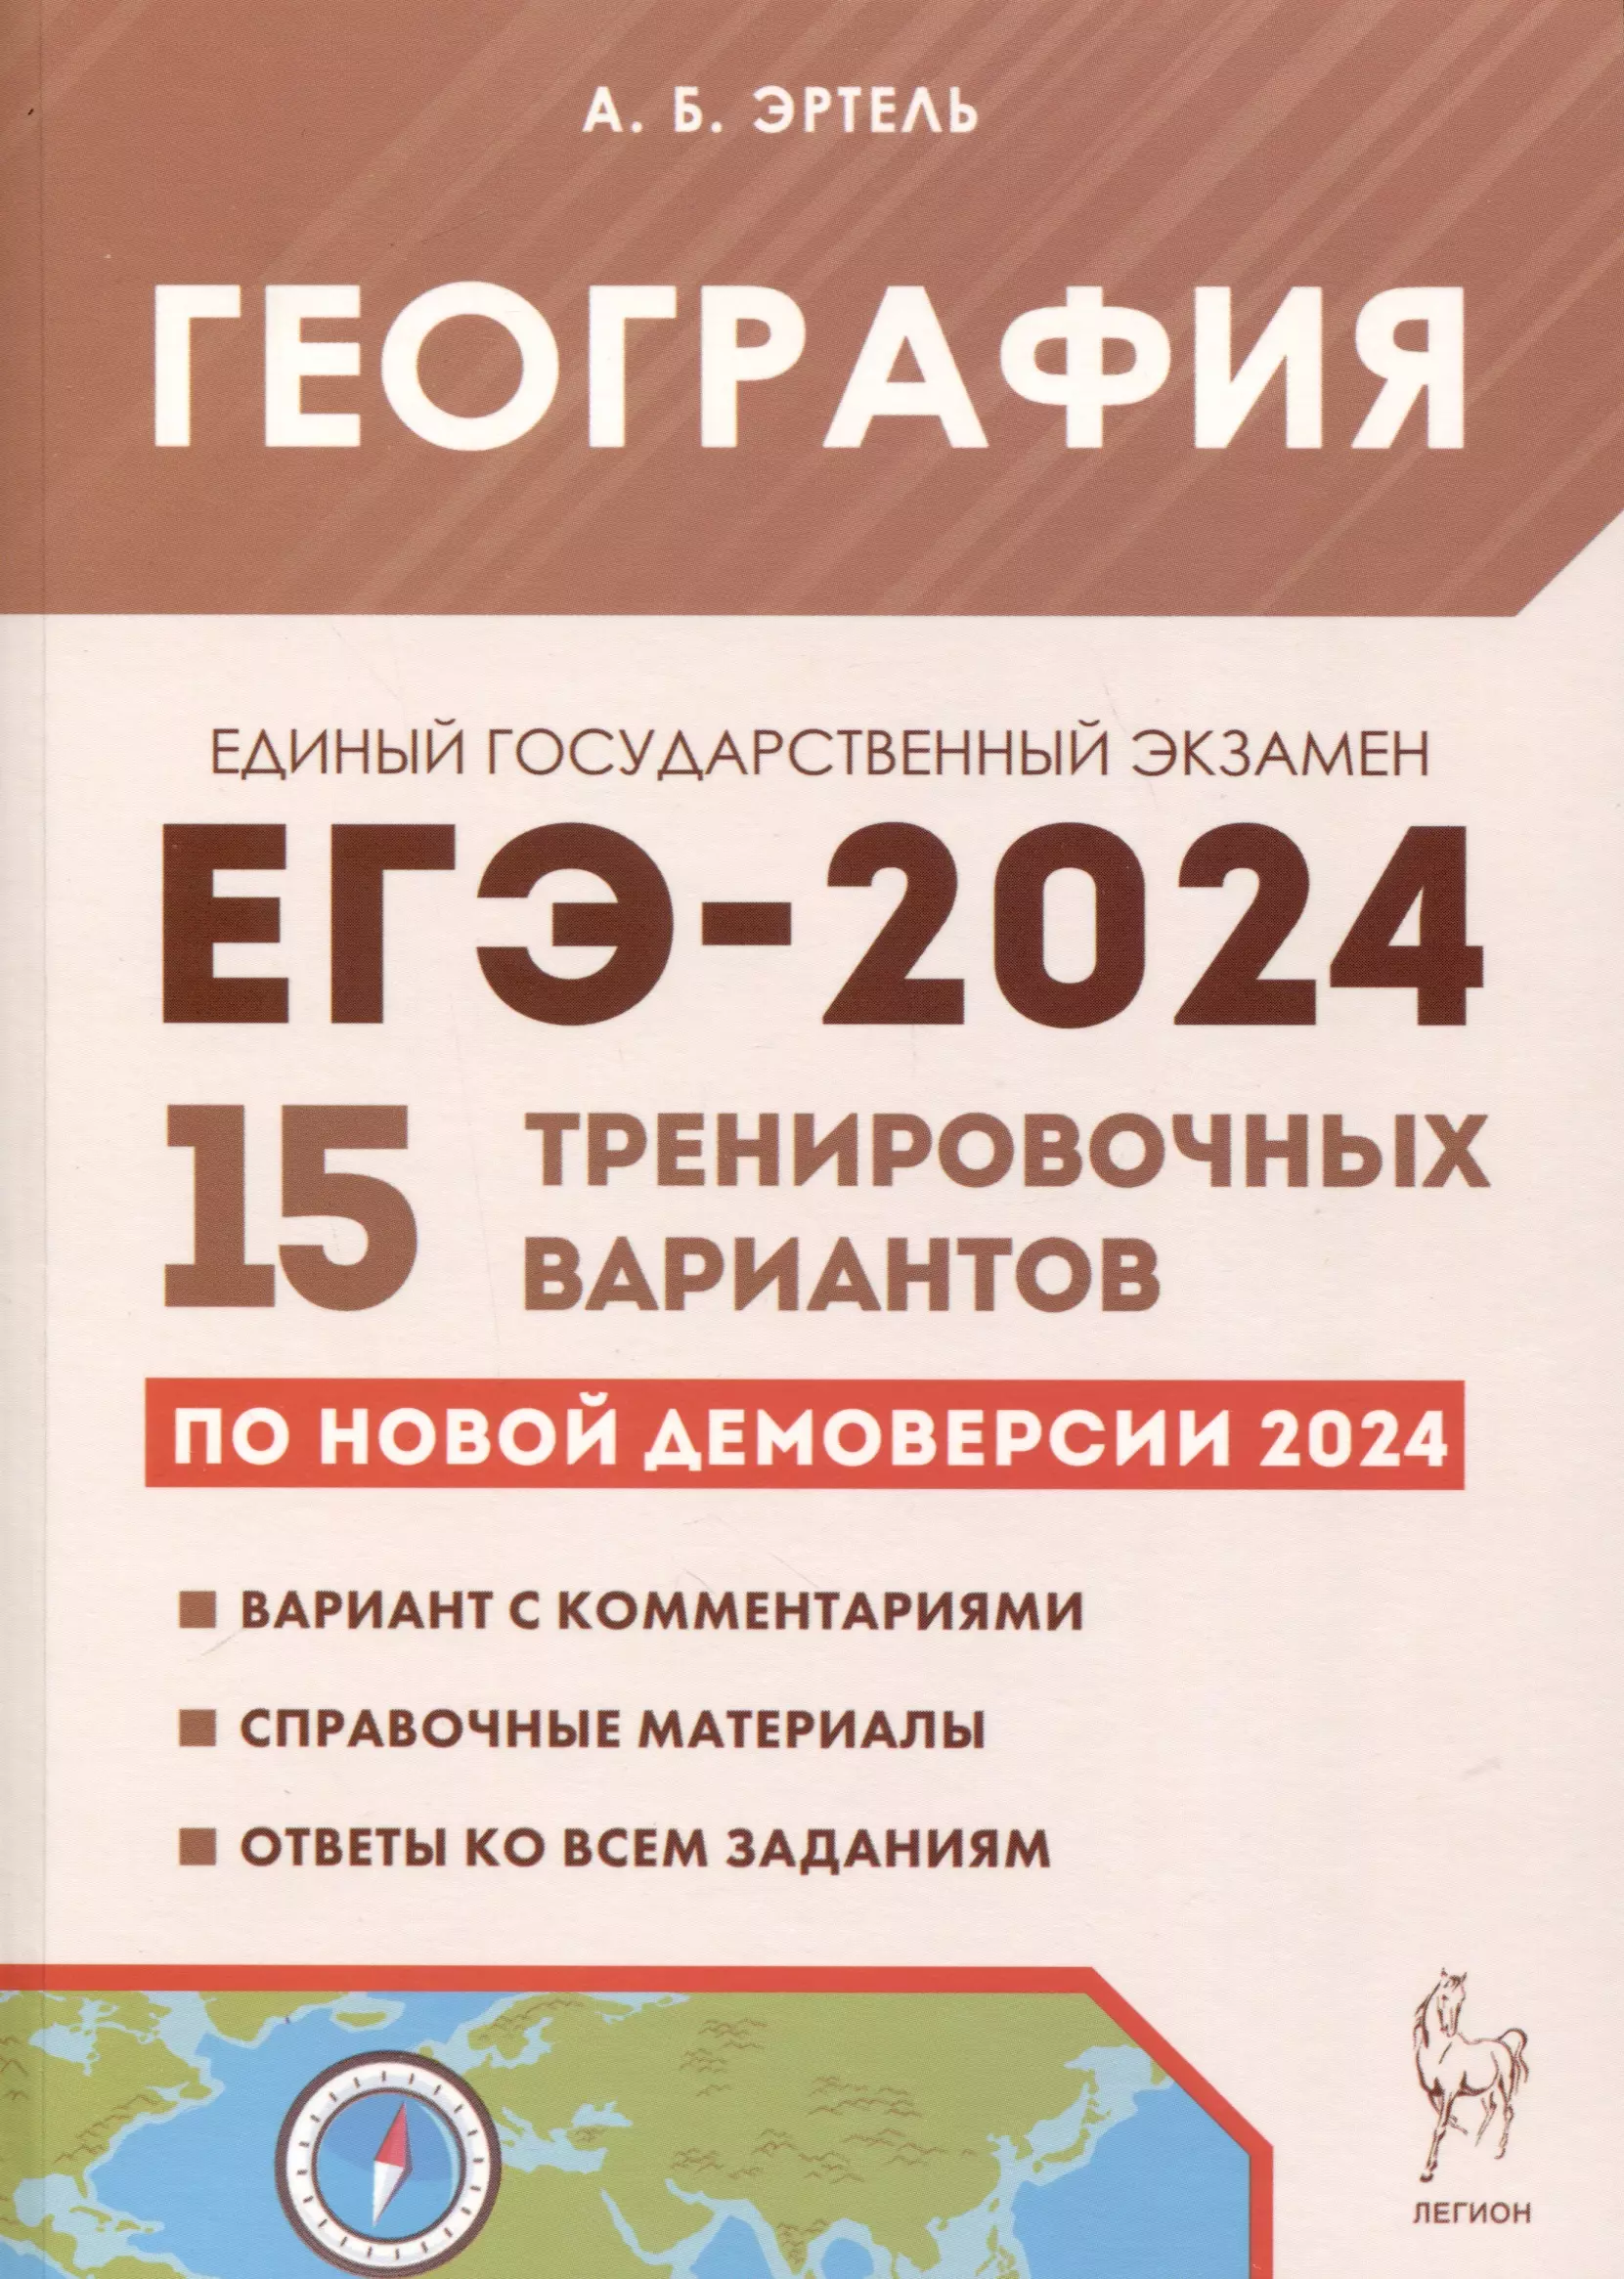 Эртель Анна Борисовна География. Подготовка к ЕГЭ-2024. 15 тренировочных вариантов по демоверсии 2024 года